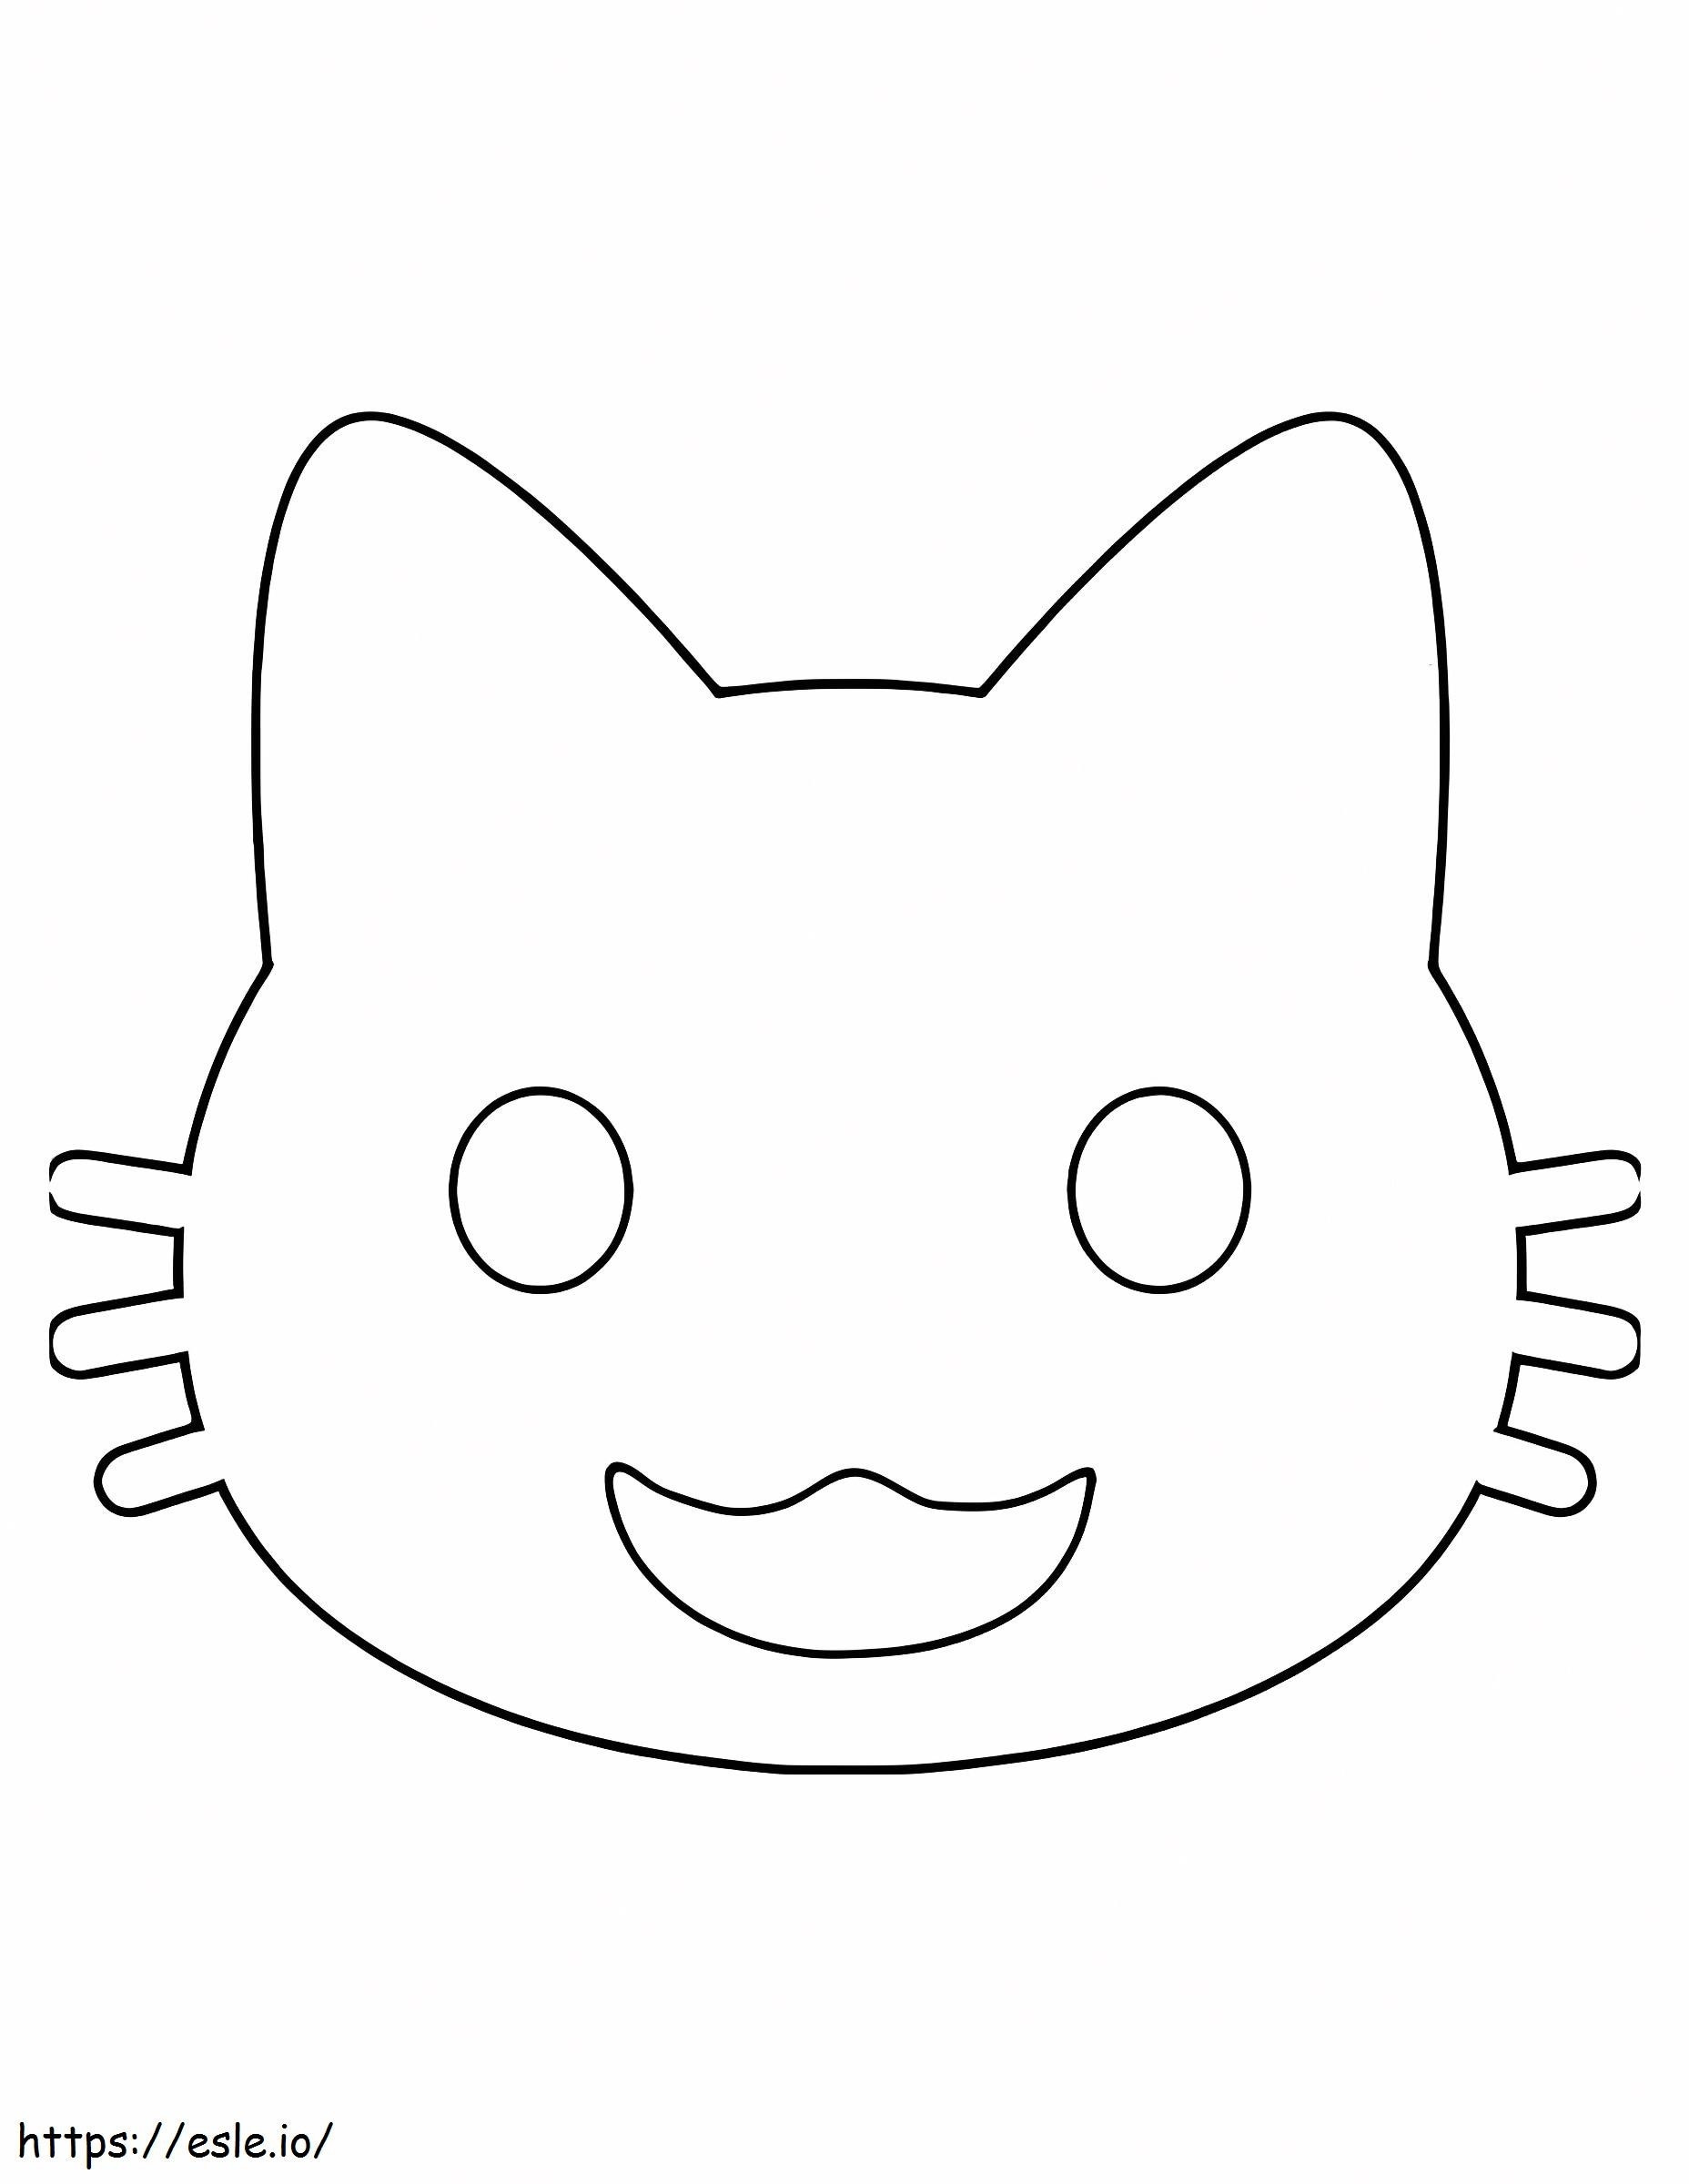 Emoji de gato divertido para colorear